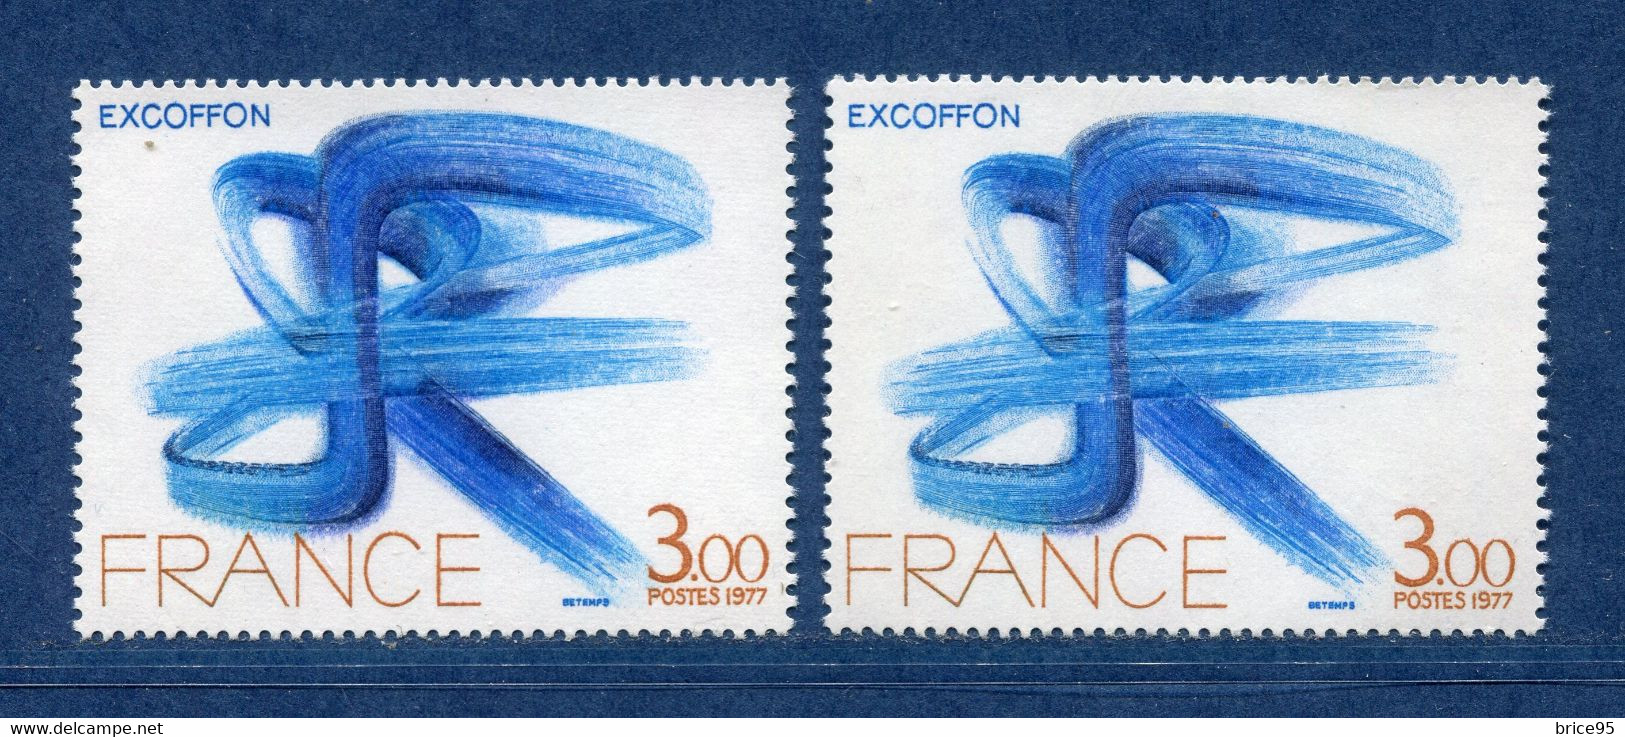 ⭐ France - Variété - YT N° 1951 - Couleurs - Pétouilles - Neuf Sans Charnière - 1977 ⭐ - Nuovi